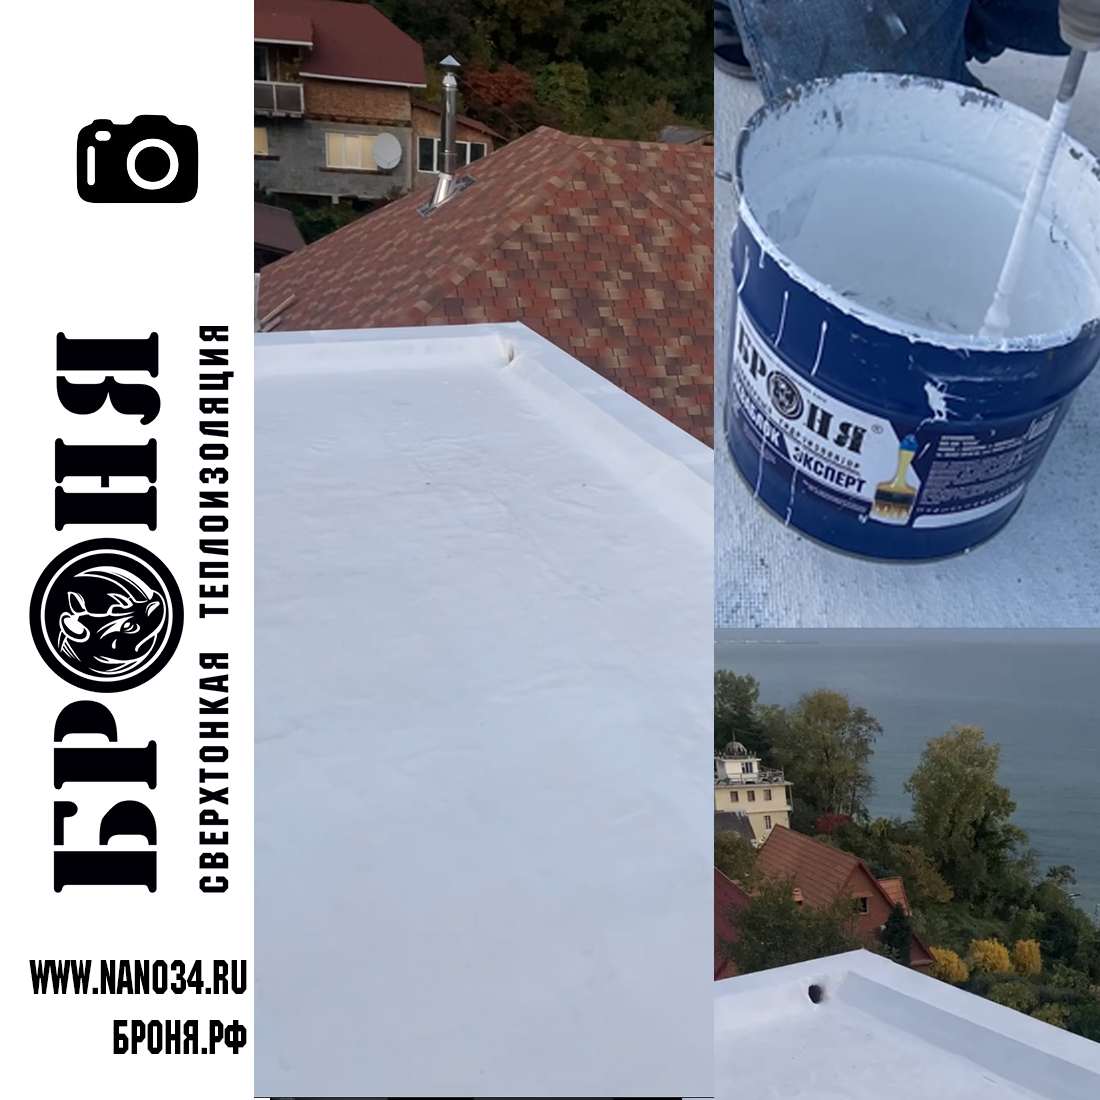 Броня Призм и Броня Эксперт на плоской крыше частного дома, г. Сочи (фото, видео)